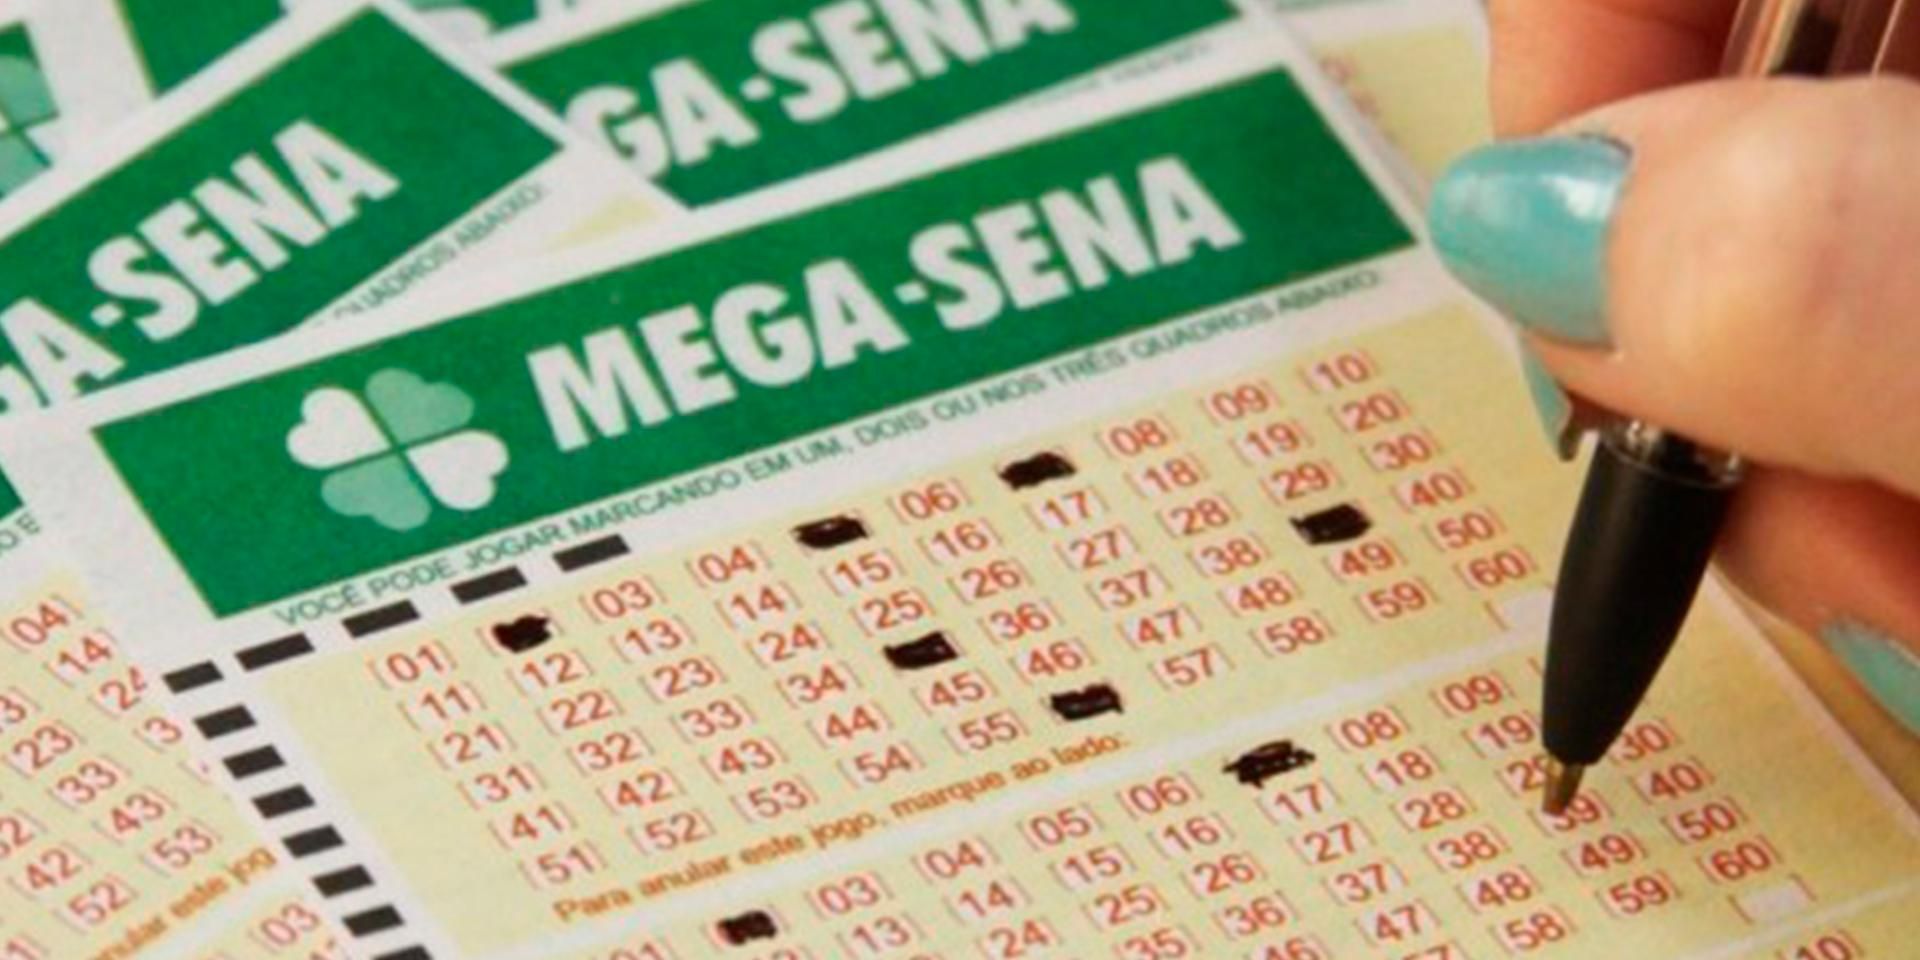 Mega-Sena pode pagar R$ 29 milhões nesta terça-feira; saiba como jogar -  NSC Total